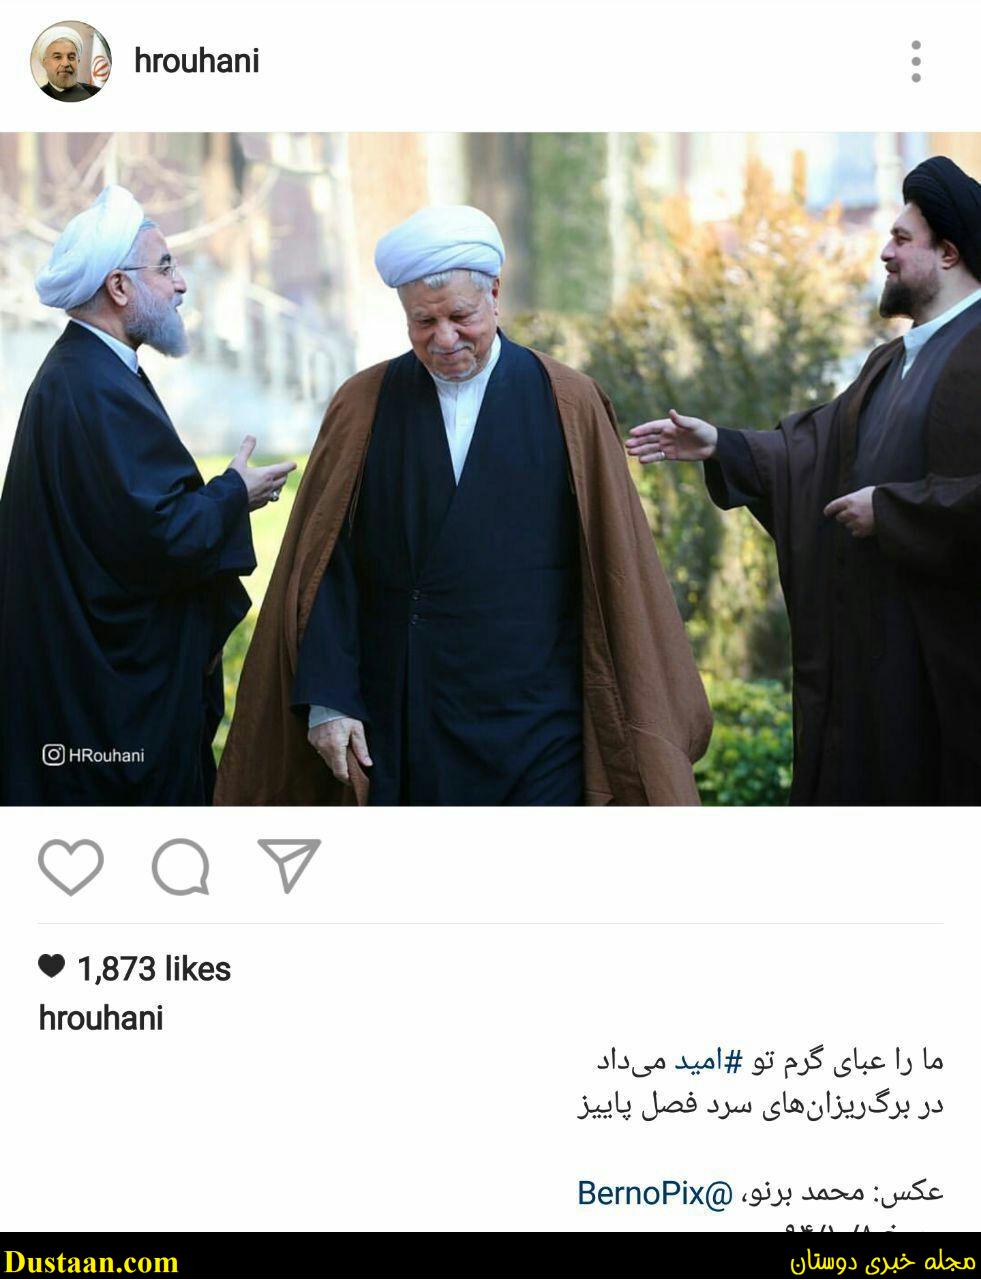 www.dustaan.com-تصویری از مرحوم هاشمی و سیدحسن خمینی در اینستاگرام روحانی